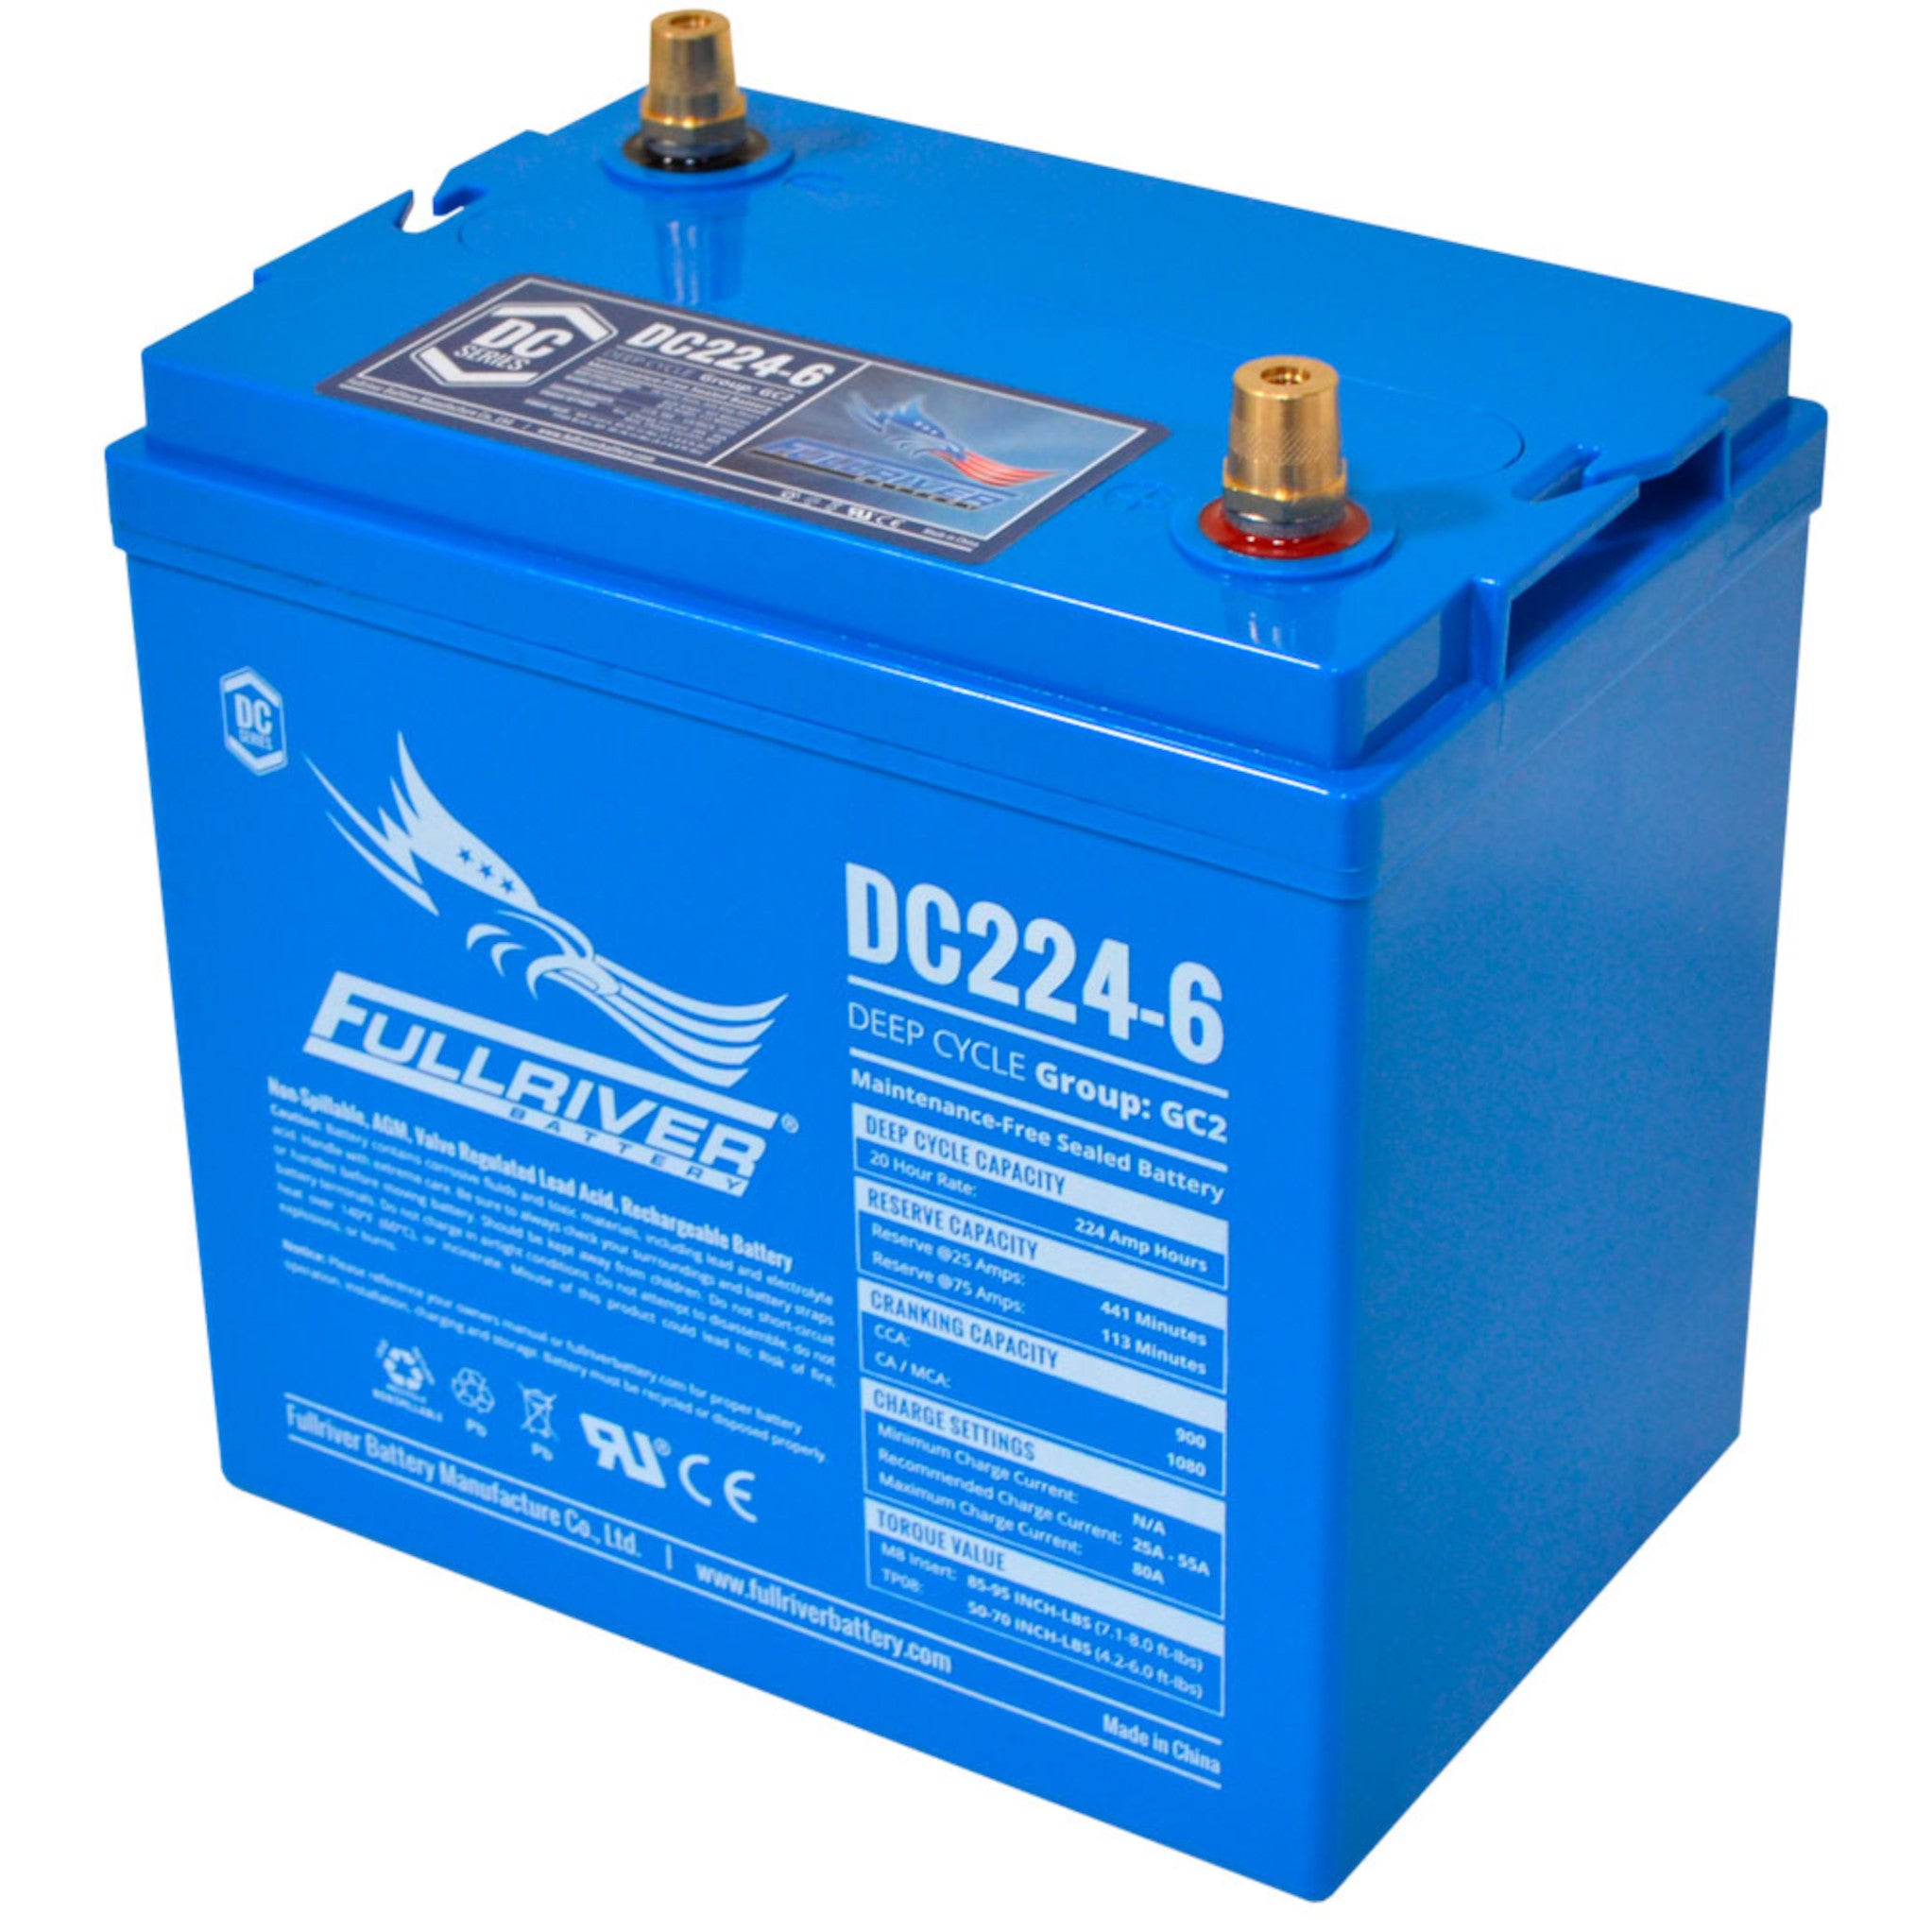 Fullriver DC224-6 AGM Battery